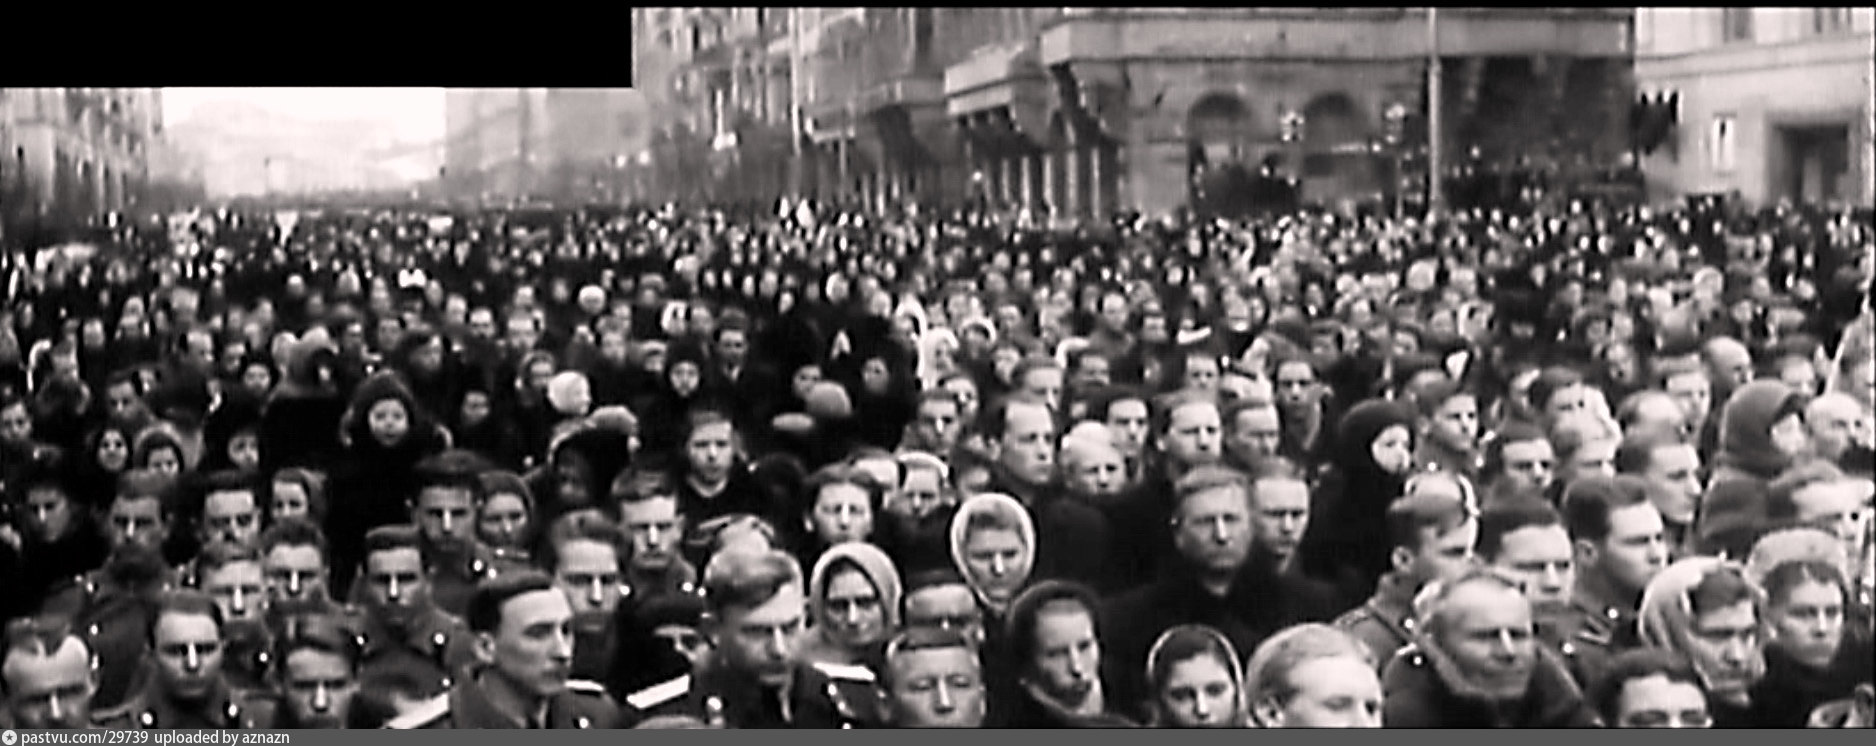 Давка на похоронах сталина сколько. Похороны Сталина 1953. 1953 Москва похороны Сталина. Смерть Сталина давка. Похороны Сталина процессия.